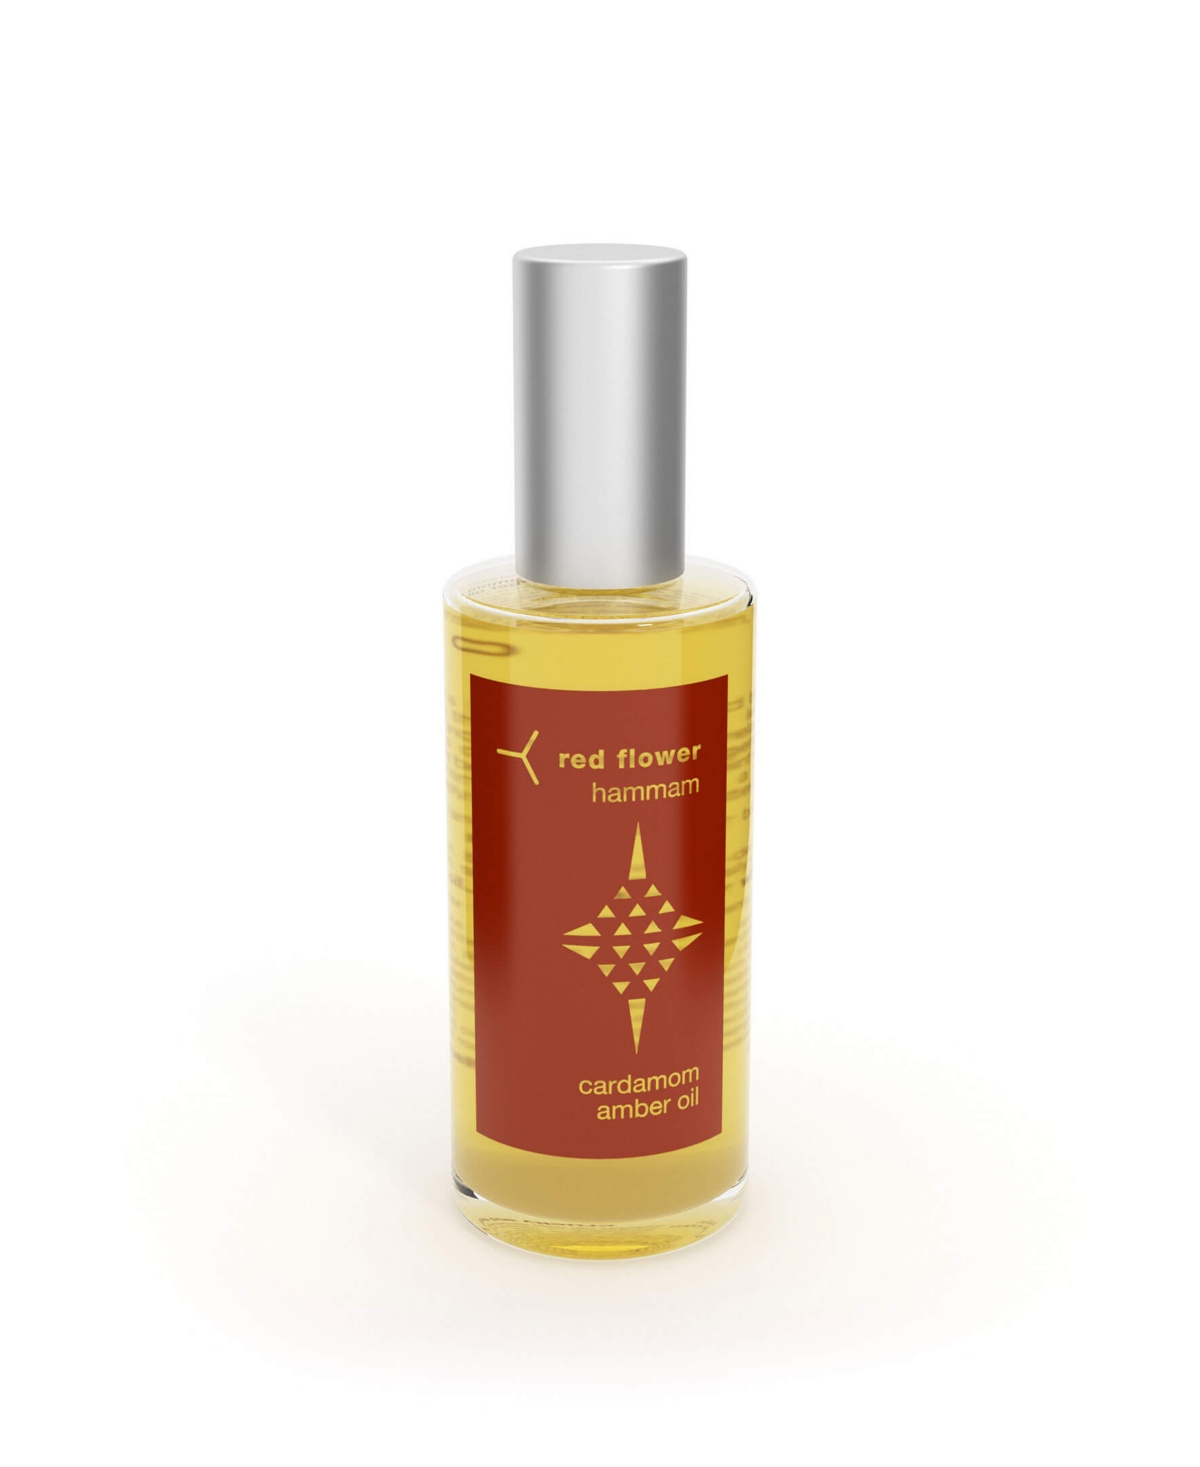 Cardamom Amber Oil, 2.3 Oz - Clear